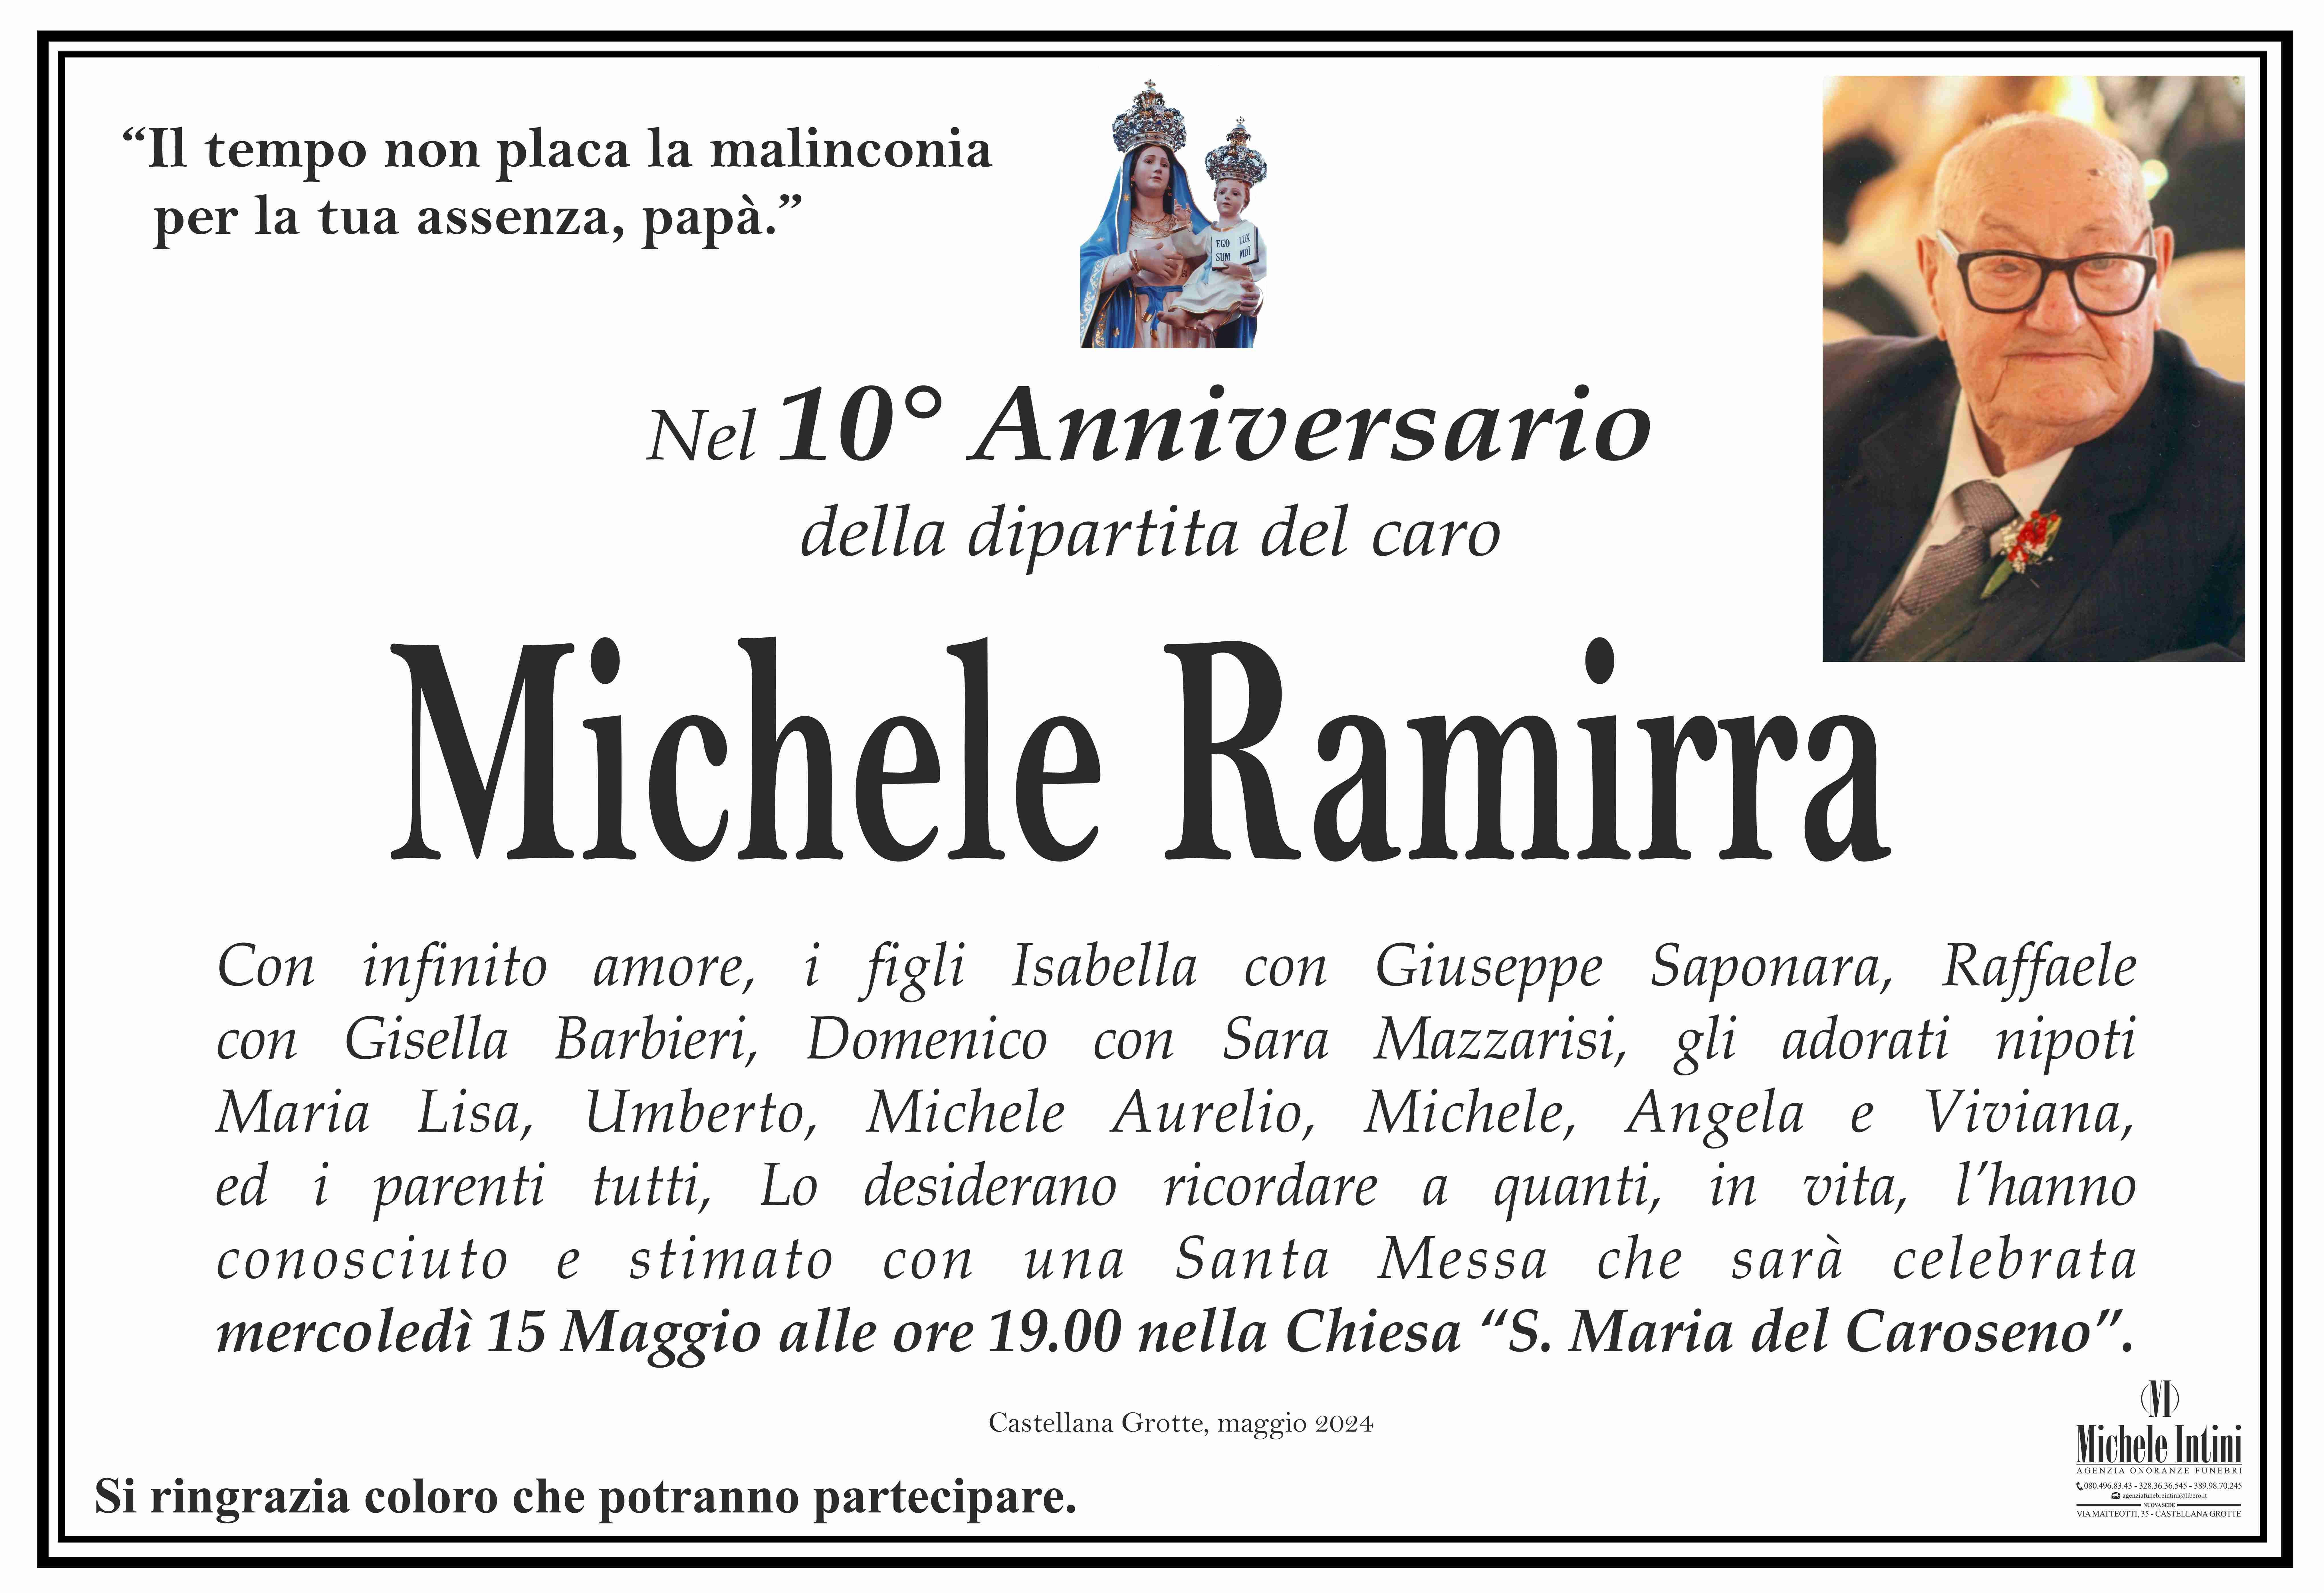 Michele Ramirra